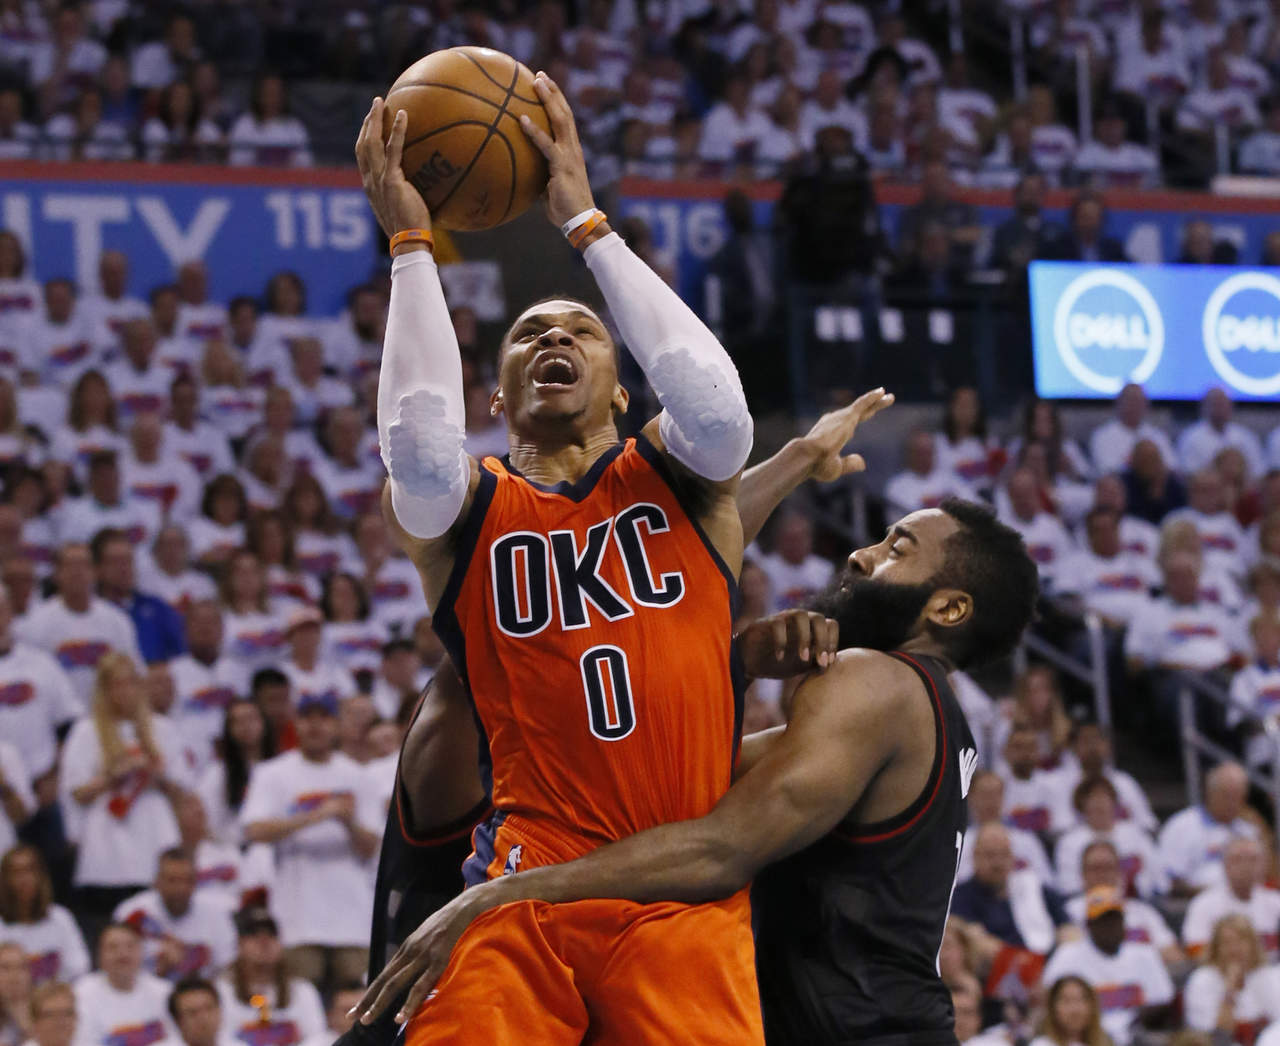 Russell Westbrook consiguió su tercer 'triple doble' consecutivo, pero el Thunder cayó 113-109 ante los Rockets, con lo que se pusieron abajo 3-1 en la serie. (AP)